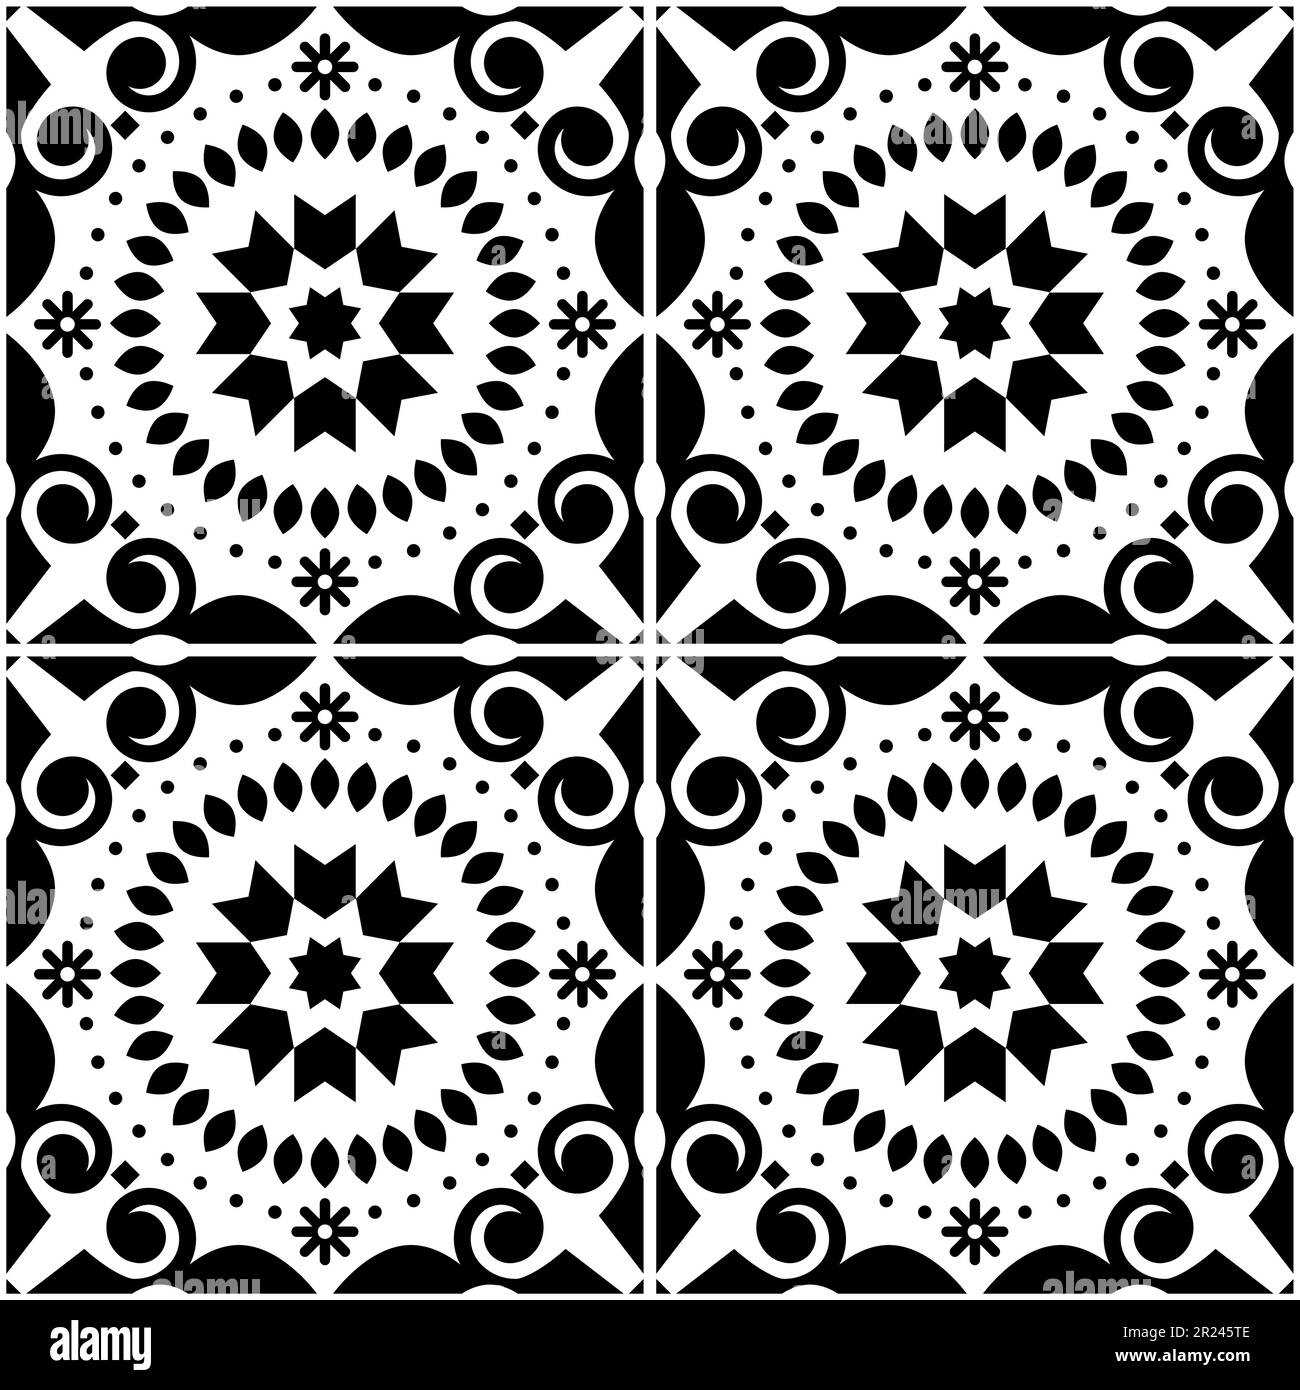 Asulejo Lissabon Fliesen nahtloses Vektormuster in Schwarz und Weiß, traditionelle Tapeten oder Textilien, Stoffmuster, inspiriert von alten portugiesischen Fliesen Stock Vektor